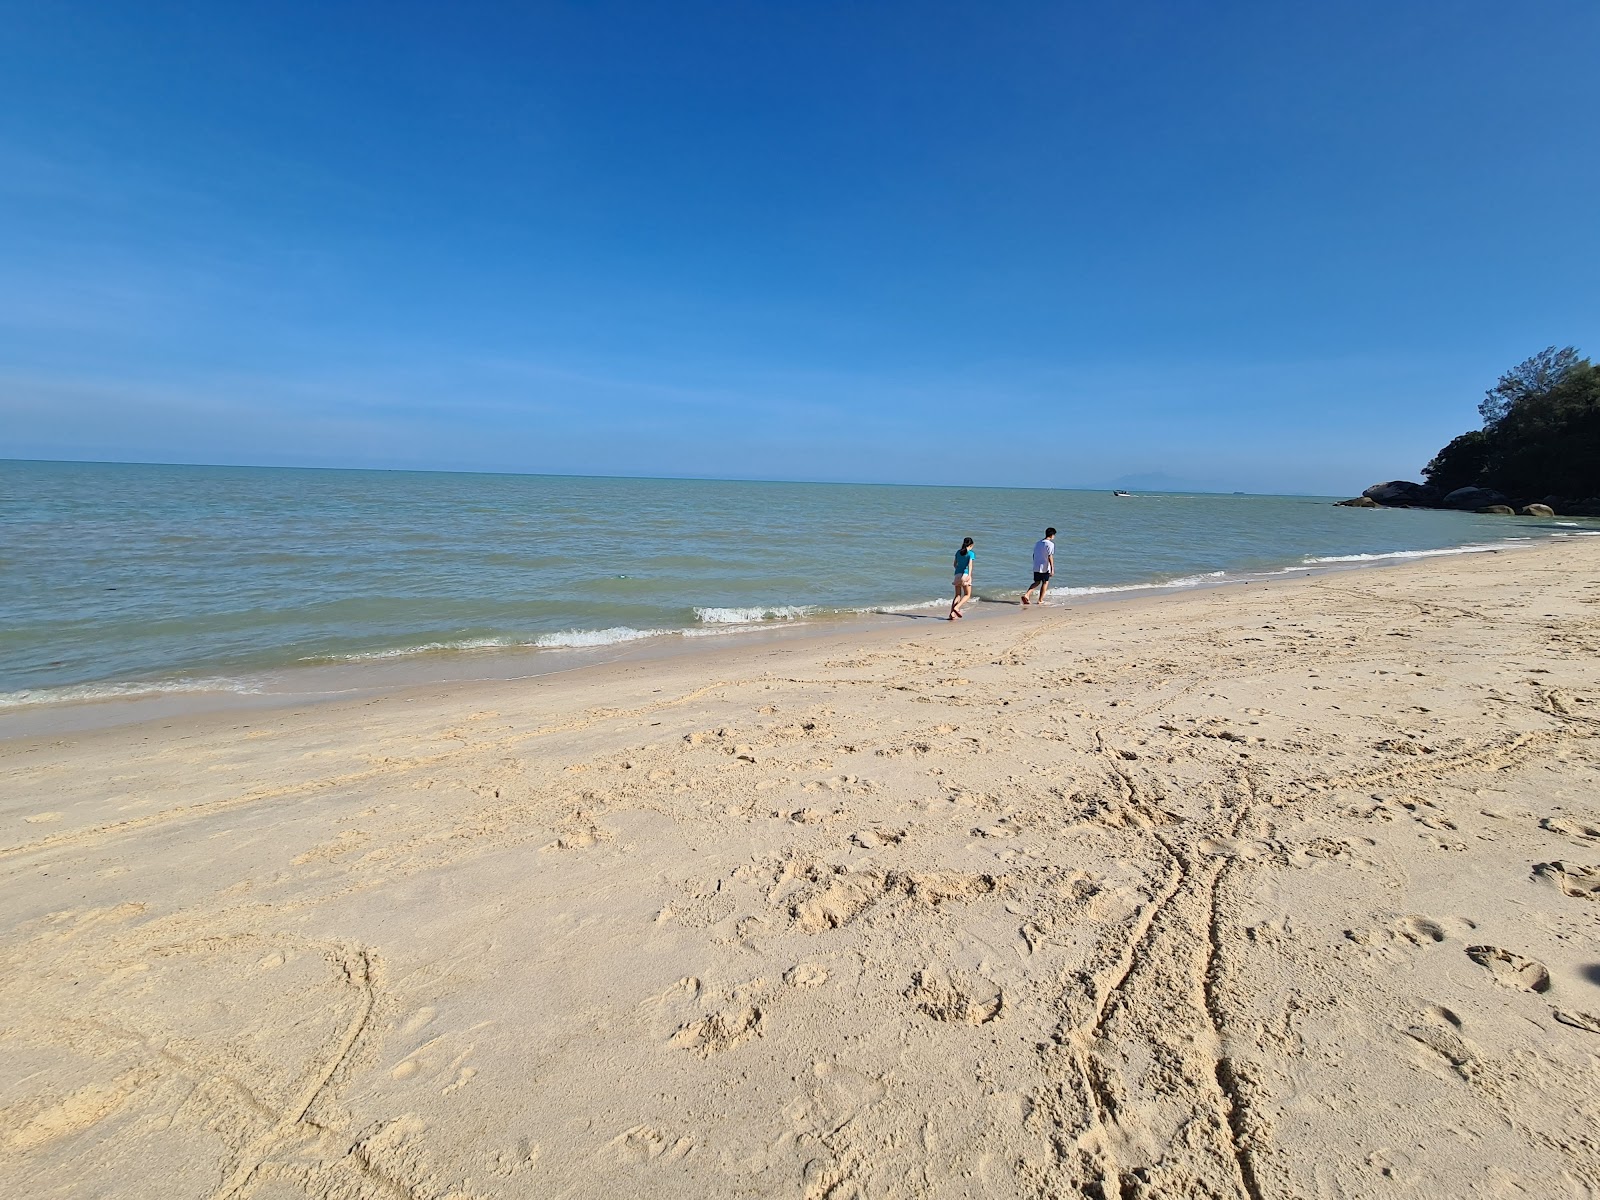 Teluk Bahang Beach'in fotoğrafı imkanlar alanı